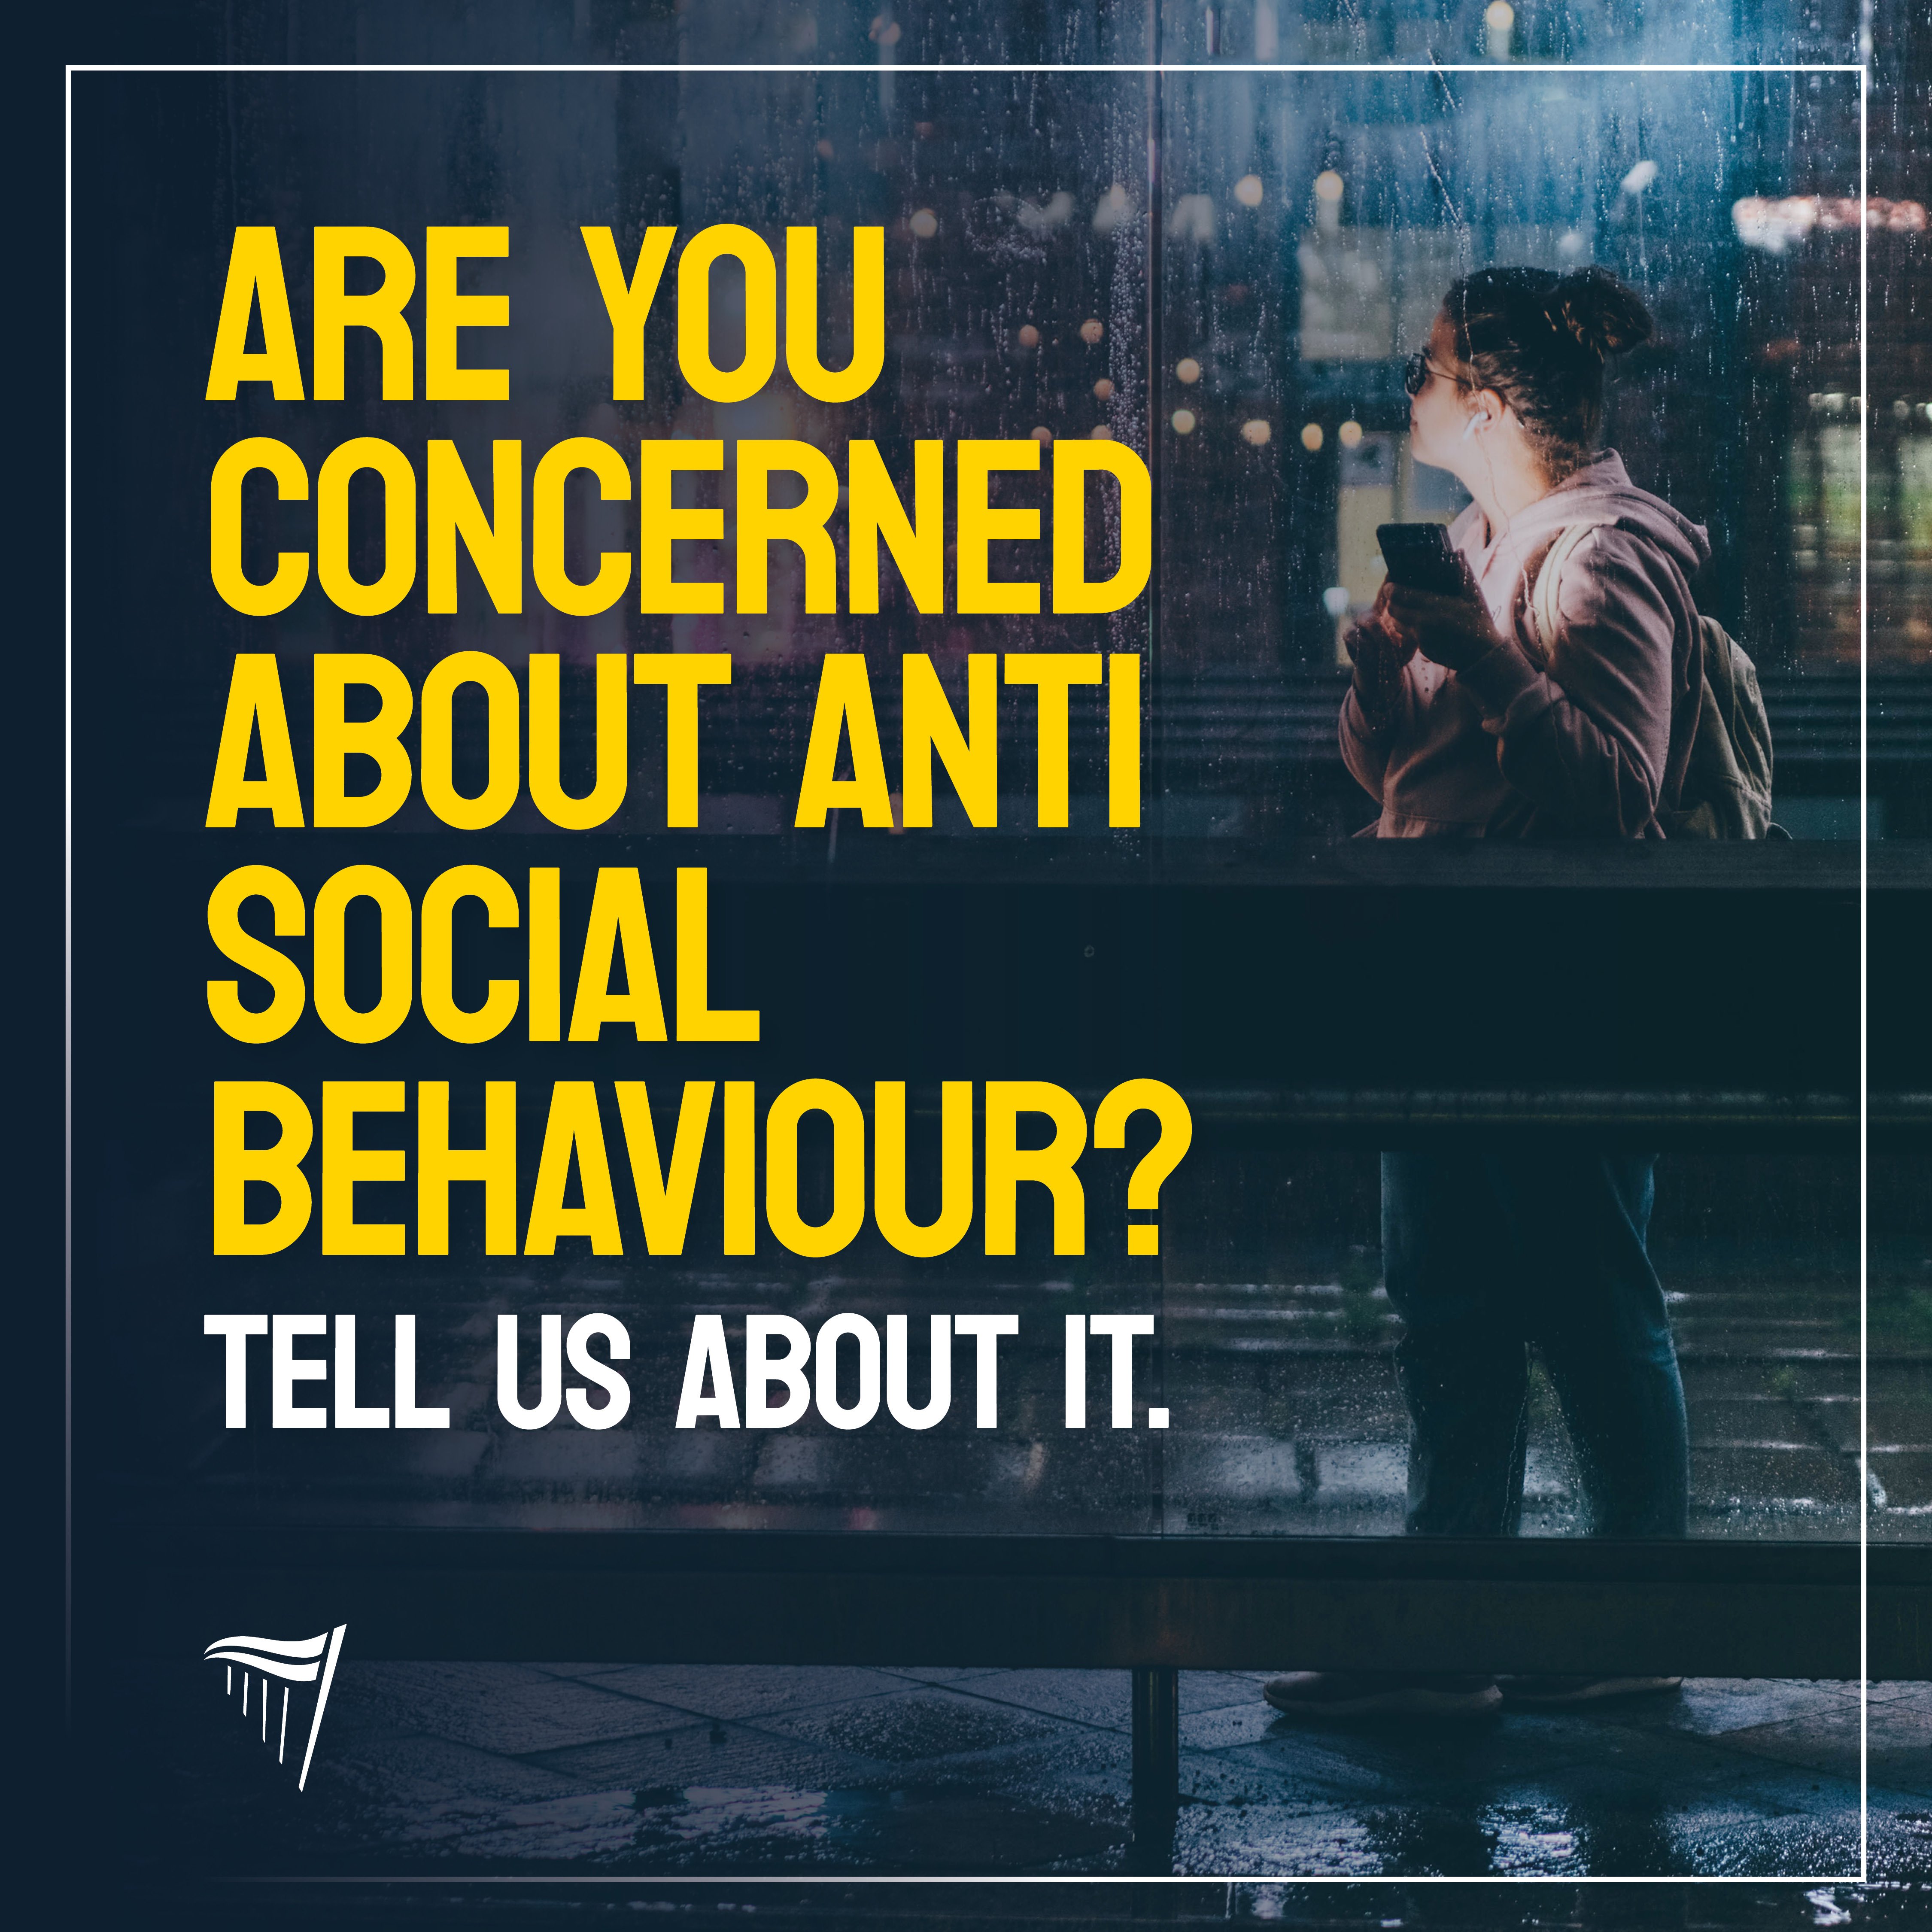 Fianna Fáil launch anti-social behaviour public survey